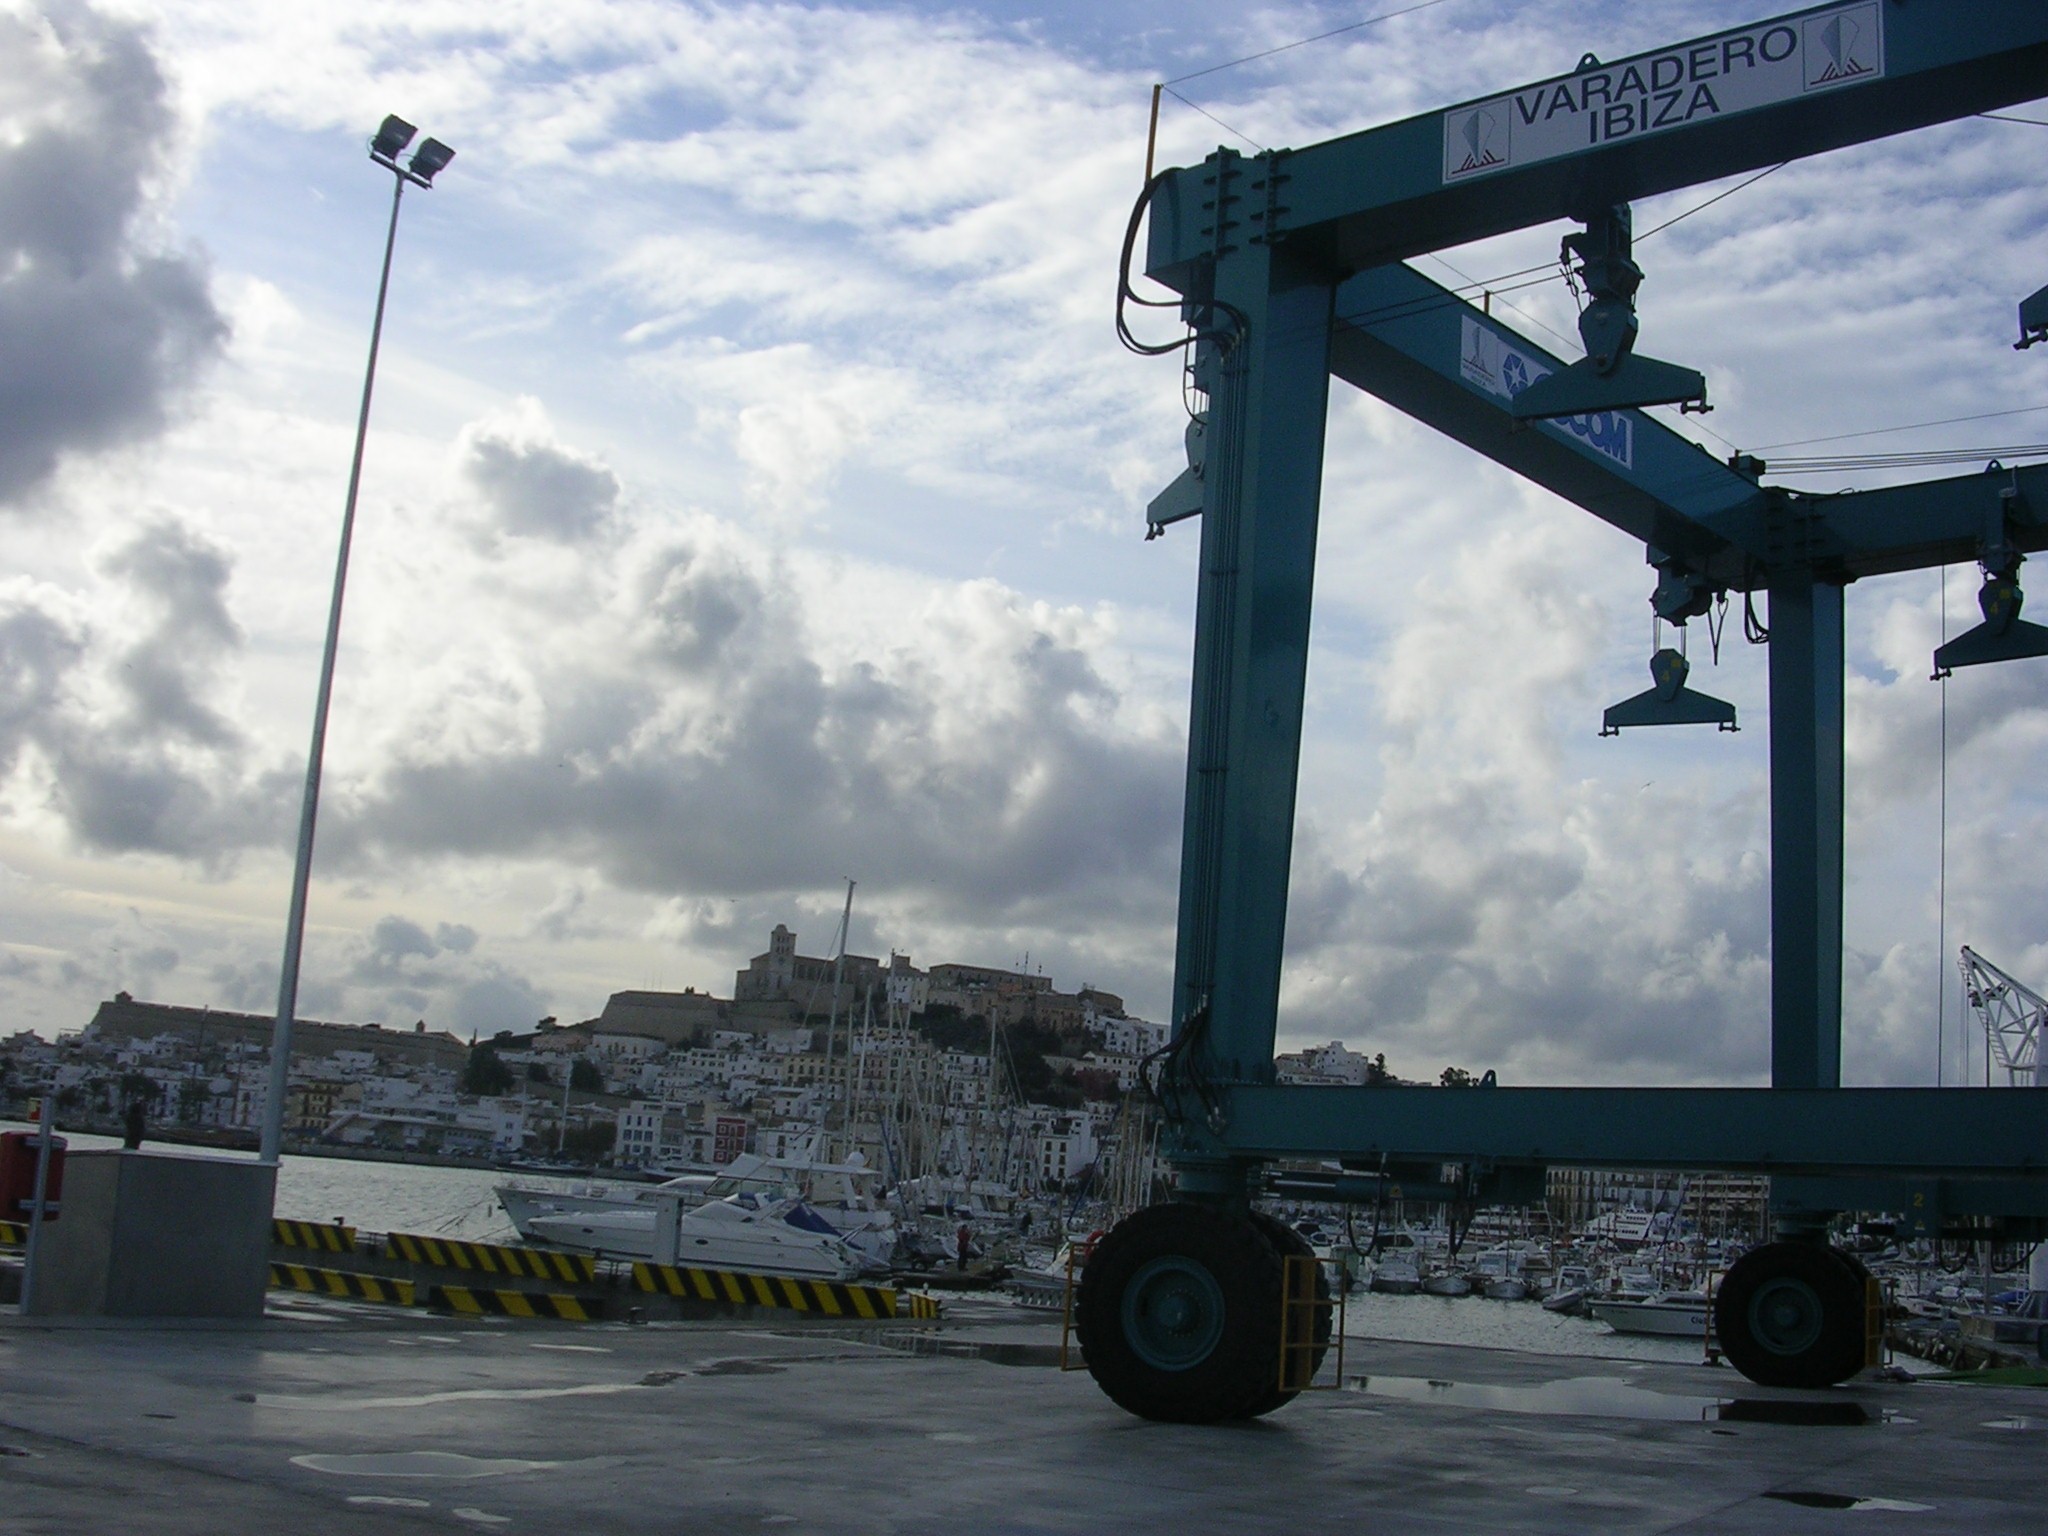 L'APB treu a concurs per quatre anys el varador adjacent al moll pesquer del port d'Eivissa